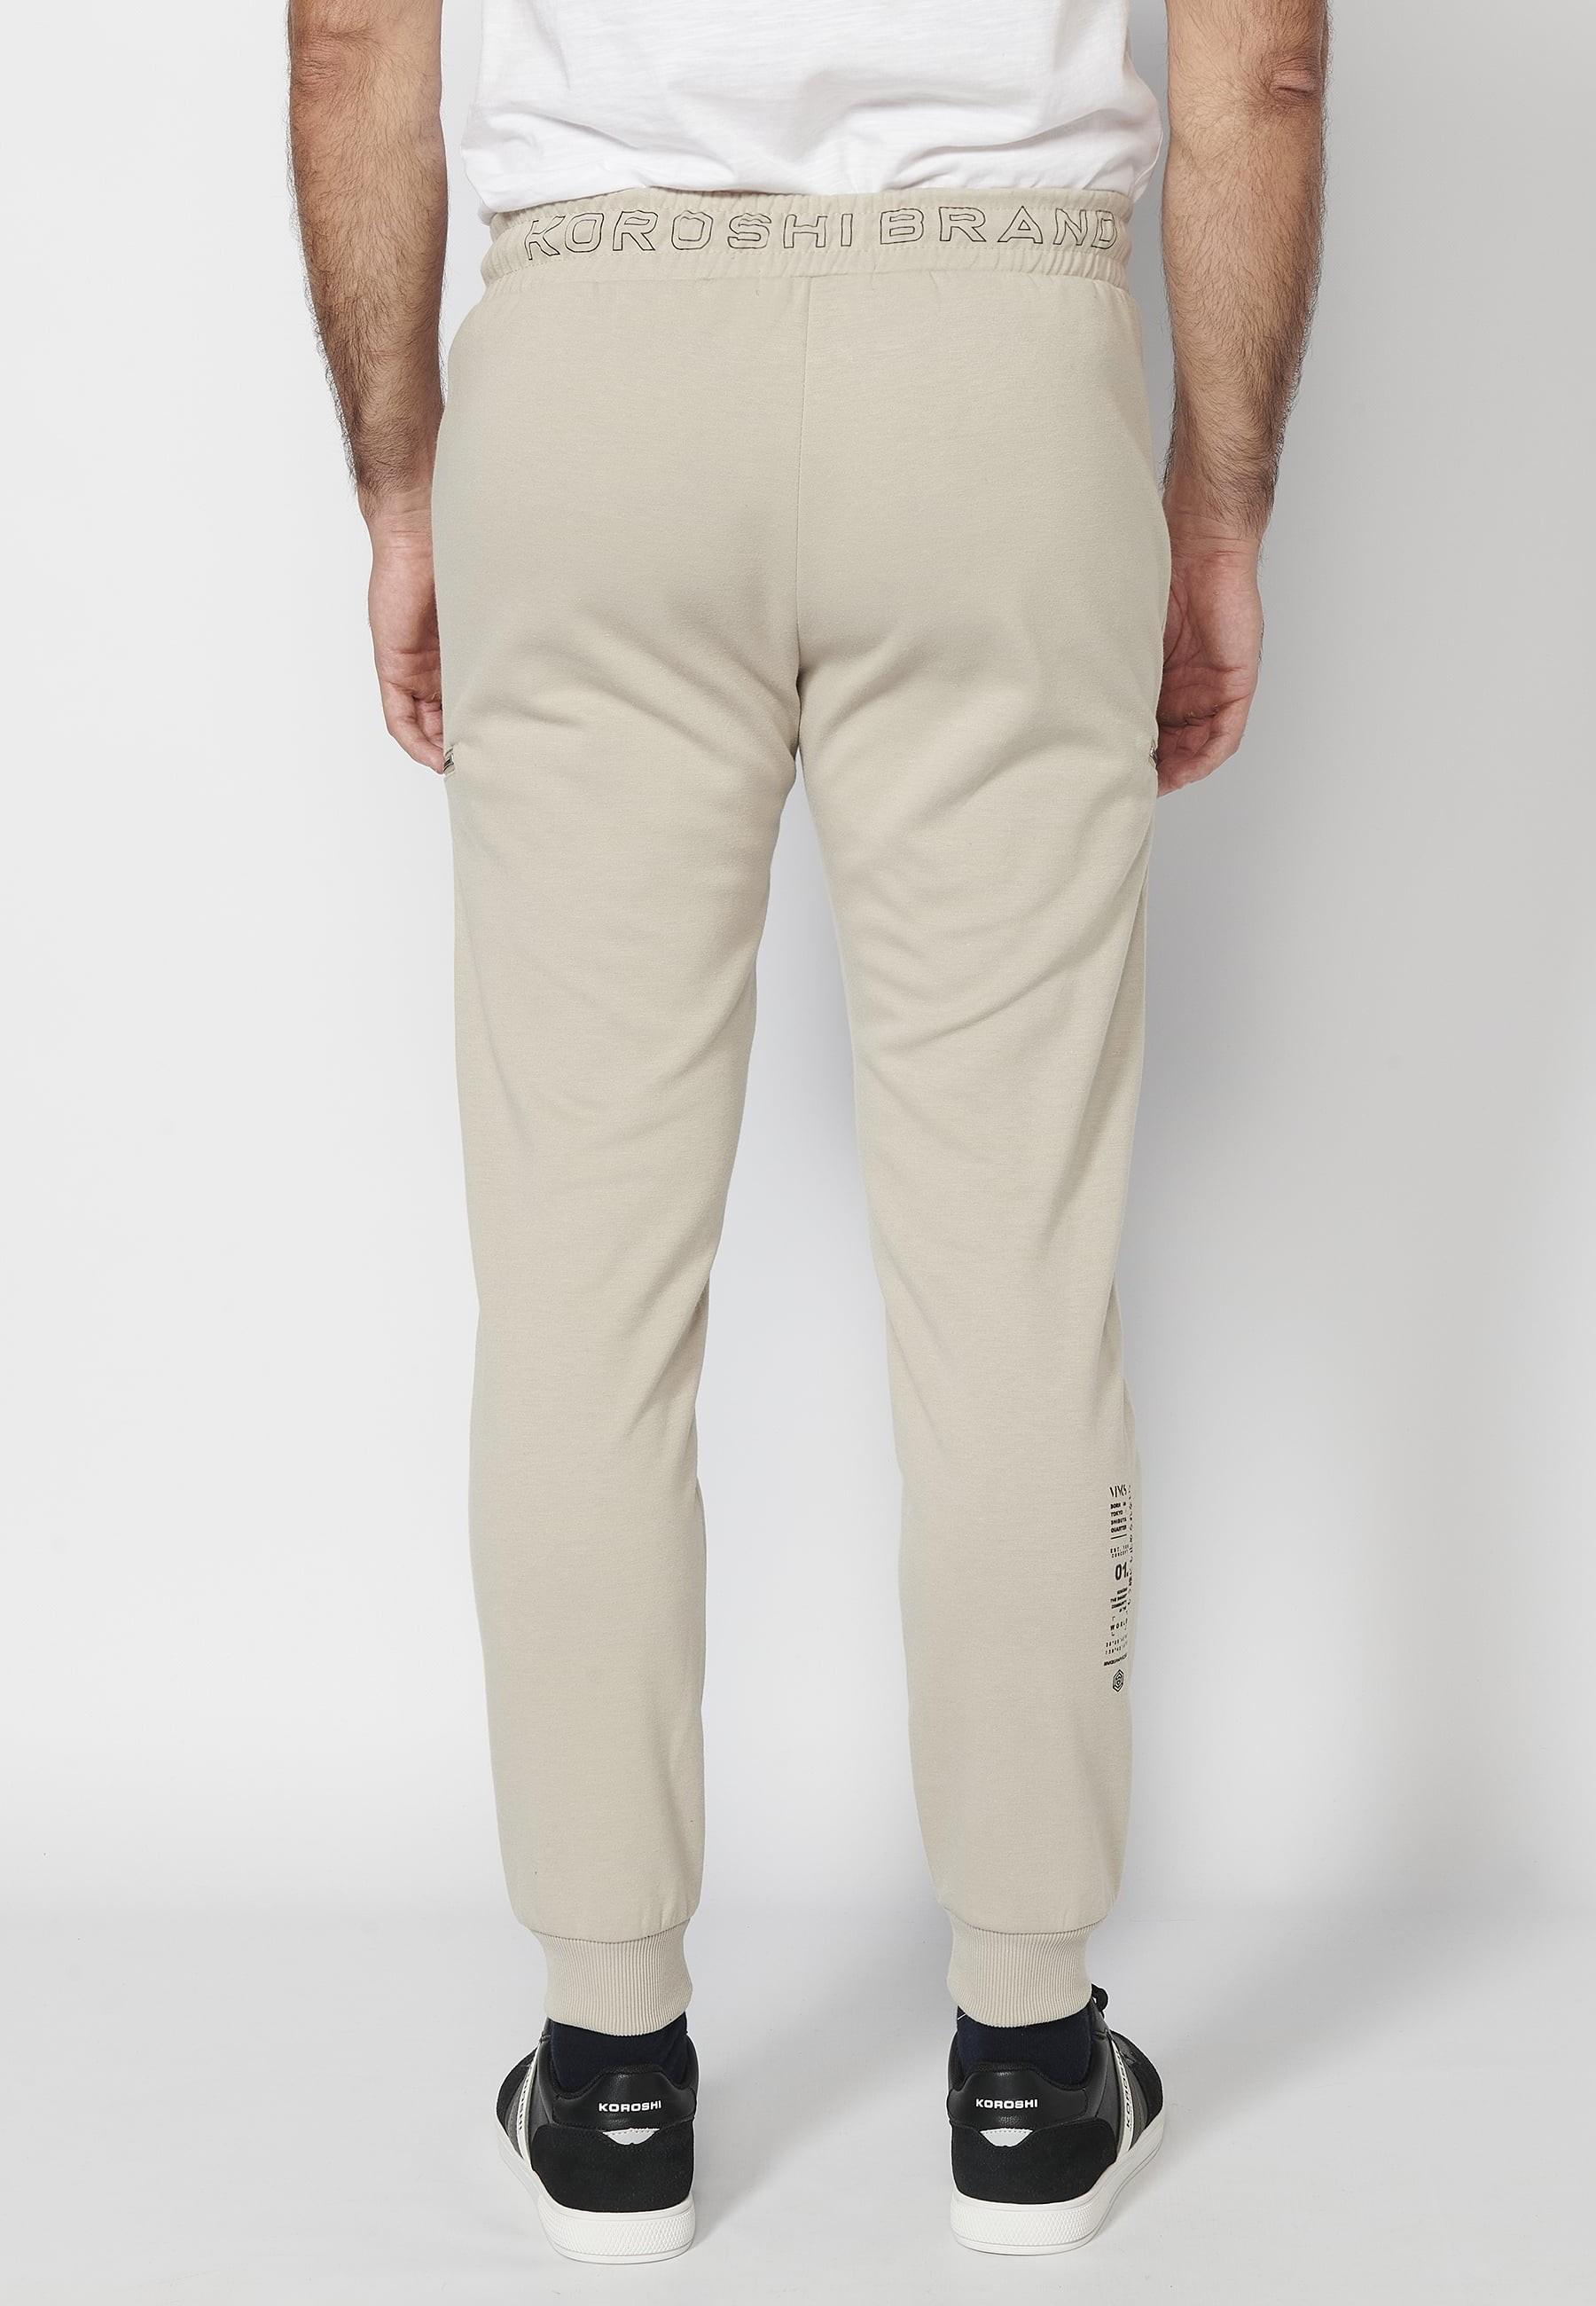 Pantalon de jogging long avec taille caoutchoutée et cordon de serrage avec découpes aux genoux, couleur Stone, pour Homme 3